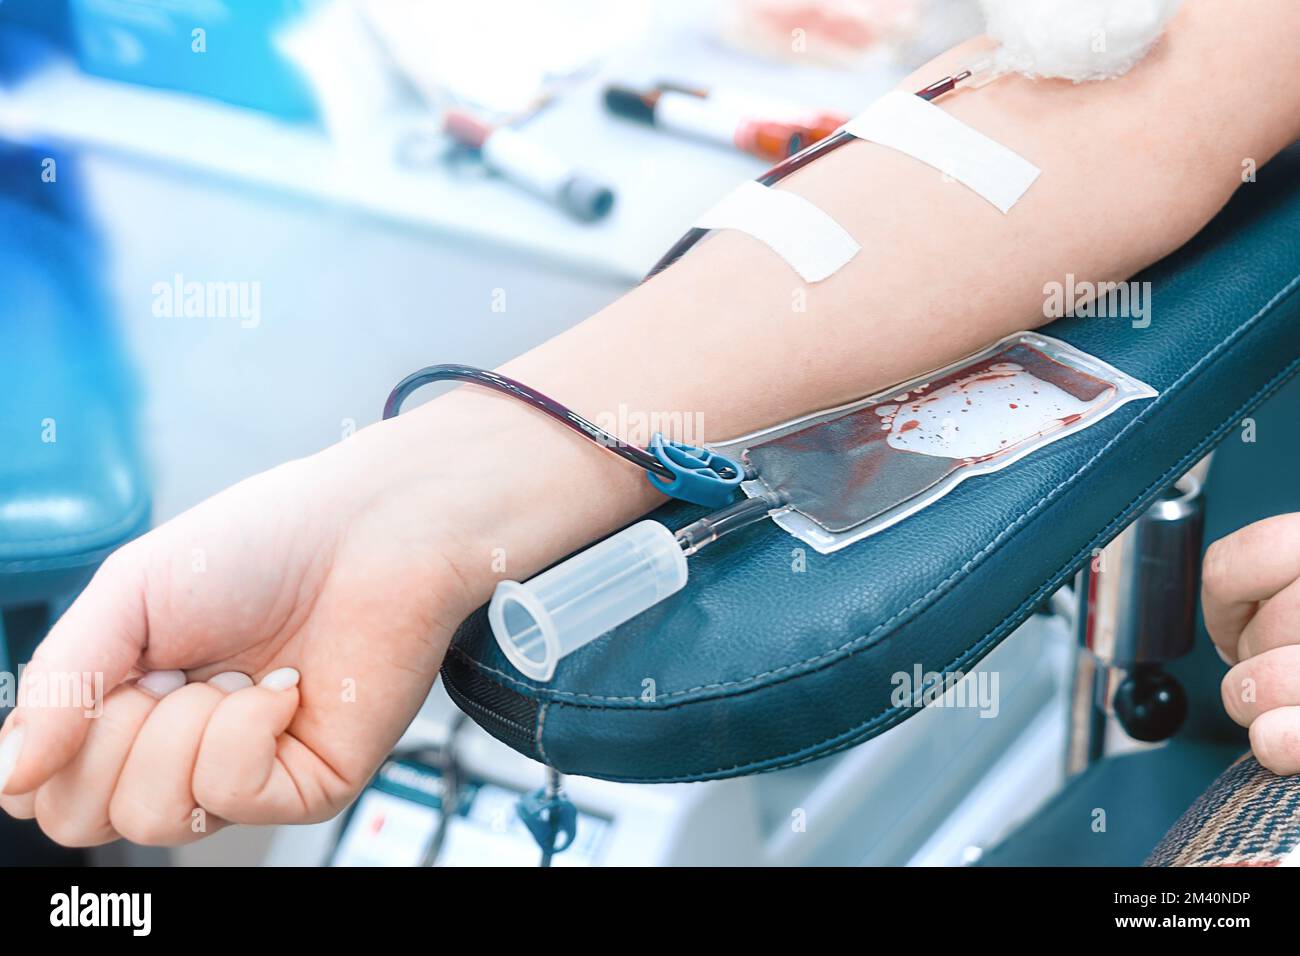 Il donatore dona il sangue alla stazione di trasfusione del sangue. Mano di donna con sacco per la donazione di sangue da vicino. Il volontariato salva vite umane. Tema della donazione. Sfondo.. Foto Stock